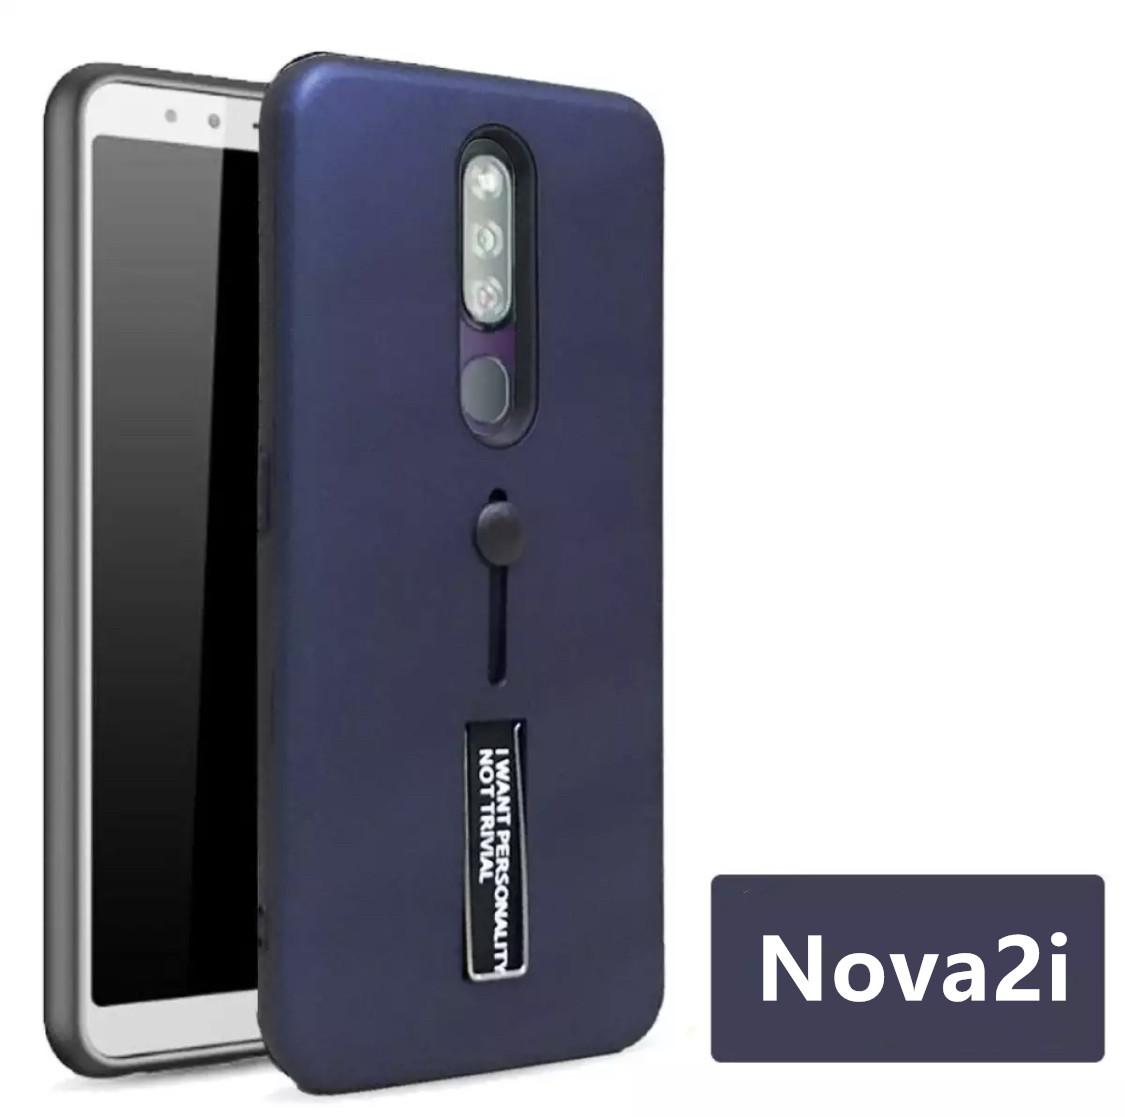 พร้อมส่งทันที Case Huawei Nova2i เคสตั้งได้ เคส huawei Nova 2i เคสหัวเว่ย โนว่าทูไอ สายคล้องนิ้ว แหวน รุ่นใหม่ เลื่อนได้ เคสกันกระแทก สวยหรู สินค้าใหม่ รับประกันความพอใจในสินค้า